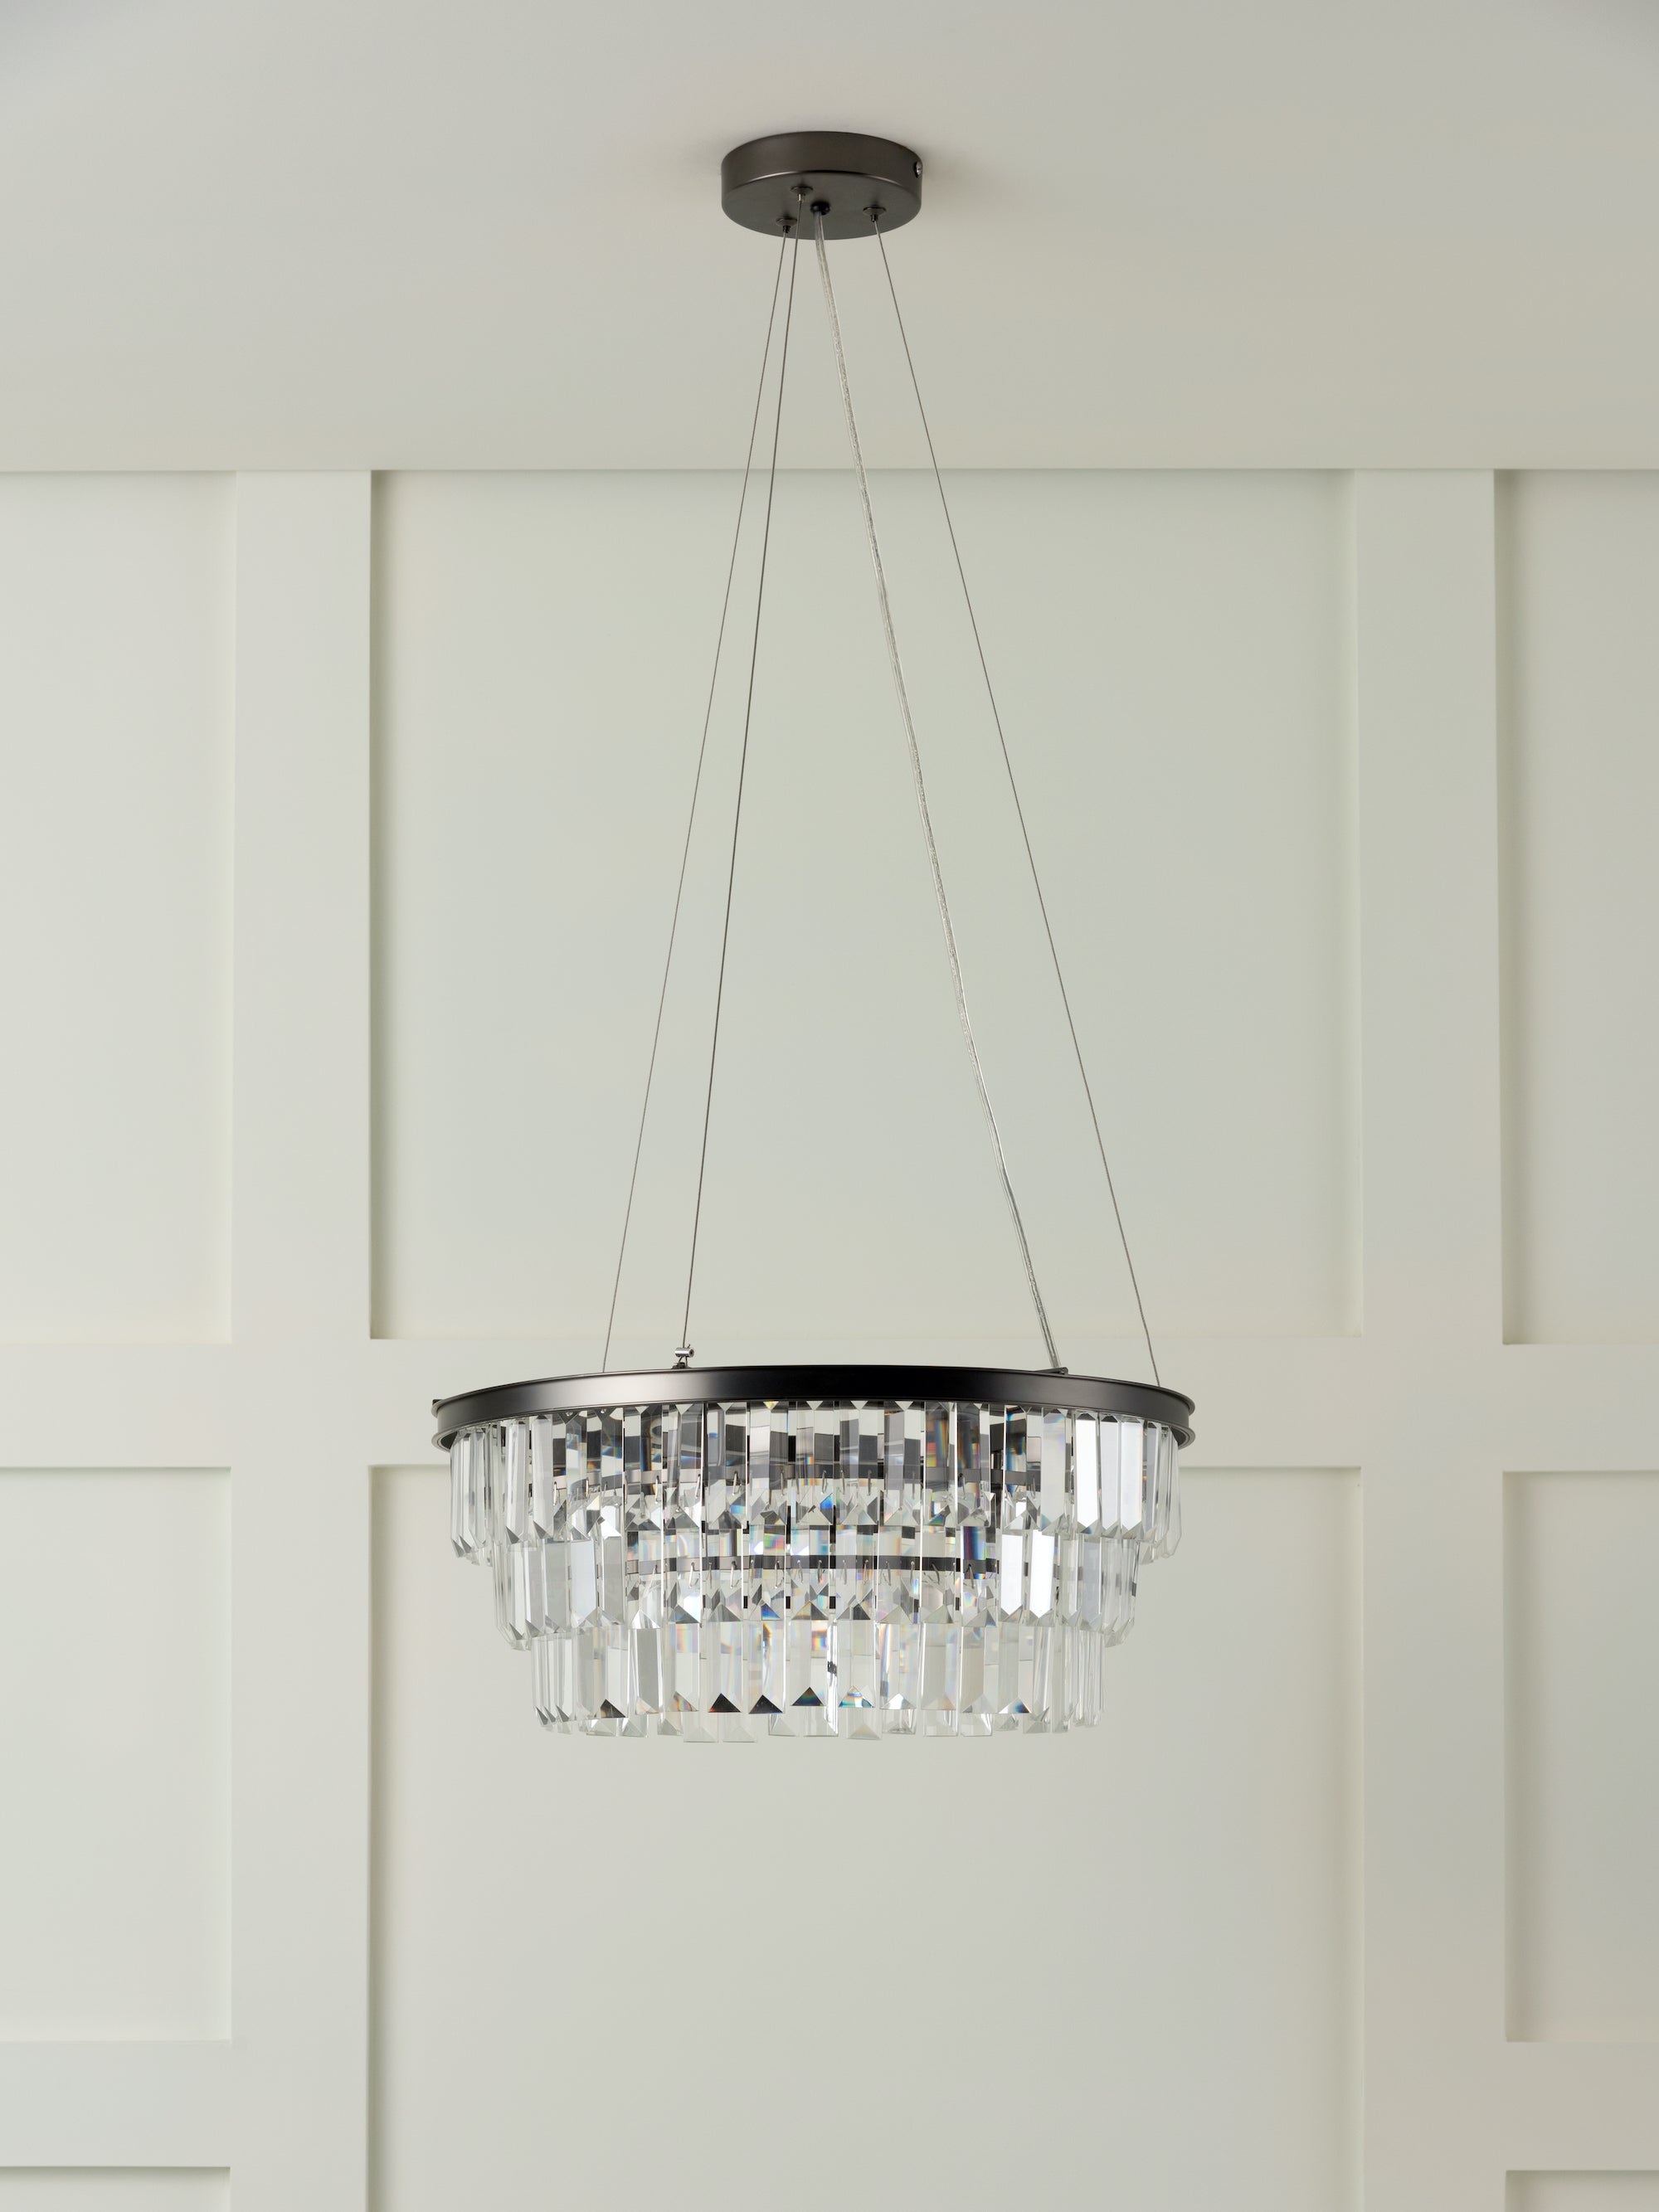 Alila - 5 light graphite silver tiered crystal glass chandelier | Chandelier | Lights & Lamps | UK | Modern Affordable Designer Lighting